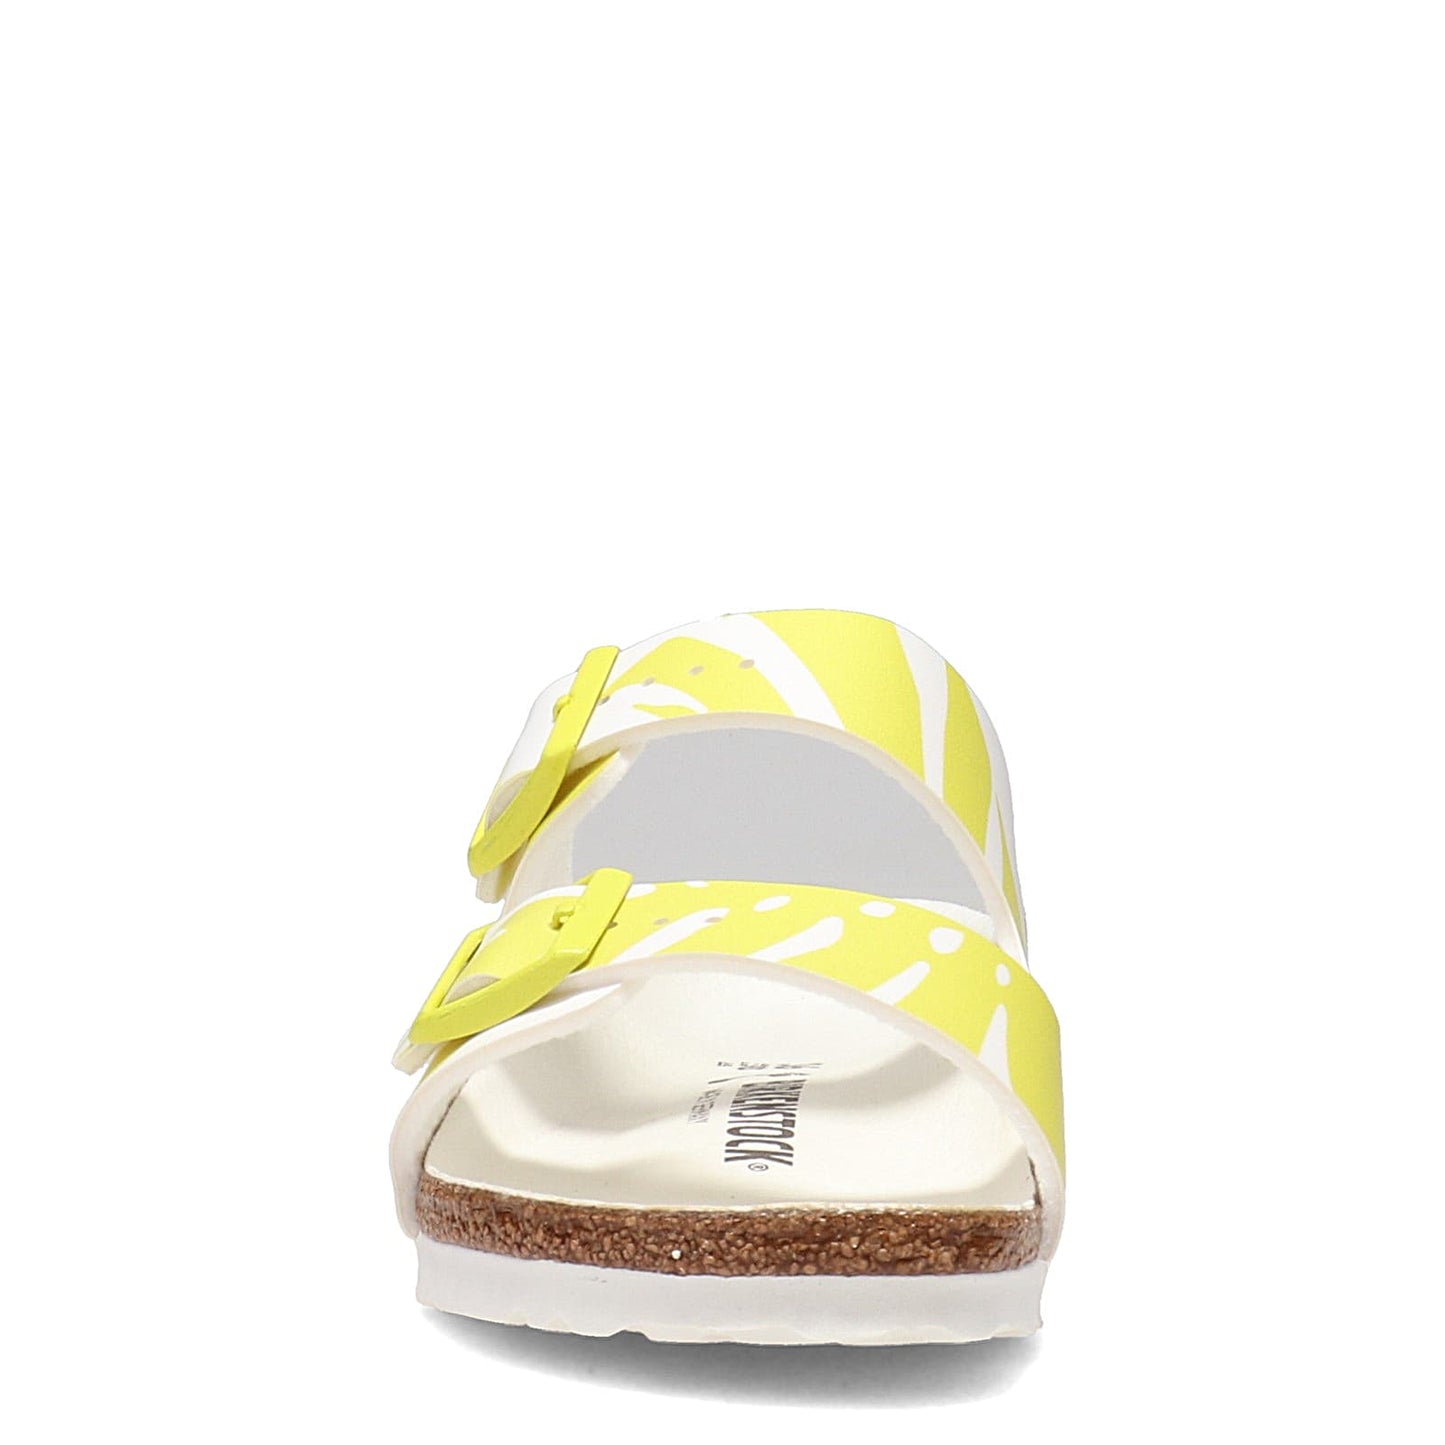 Peltz Shoes  Women's Birkenstock Arizona Birkoflor Slide Sandal - Narrow Width